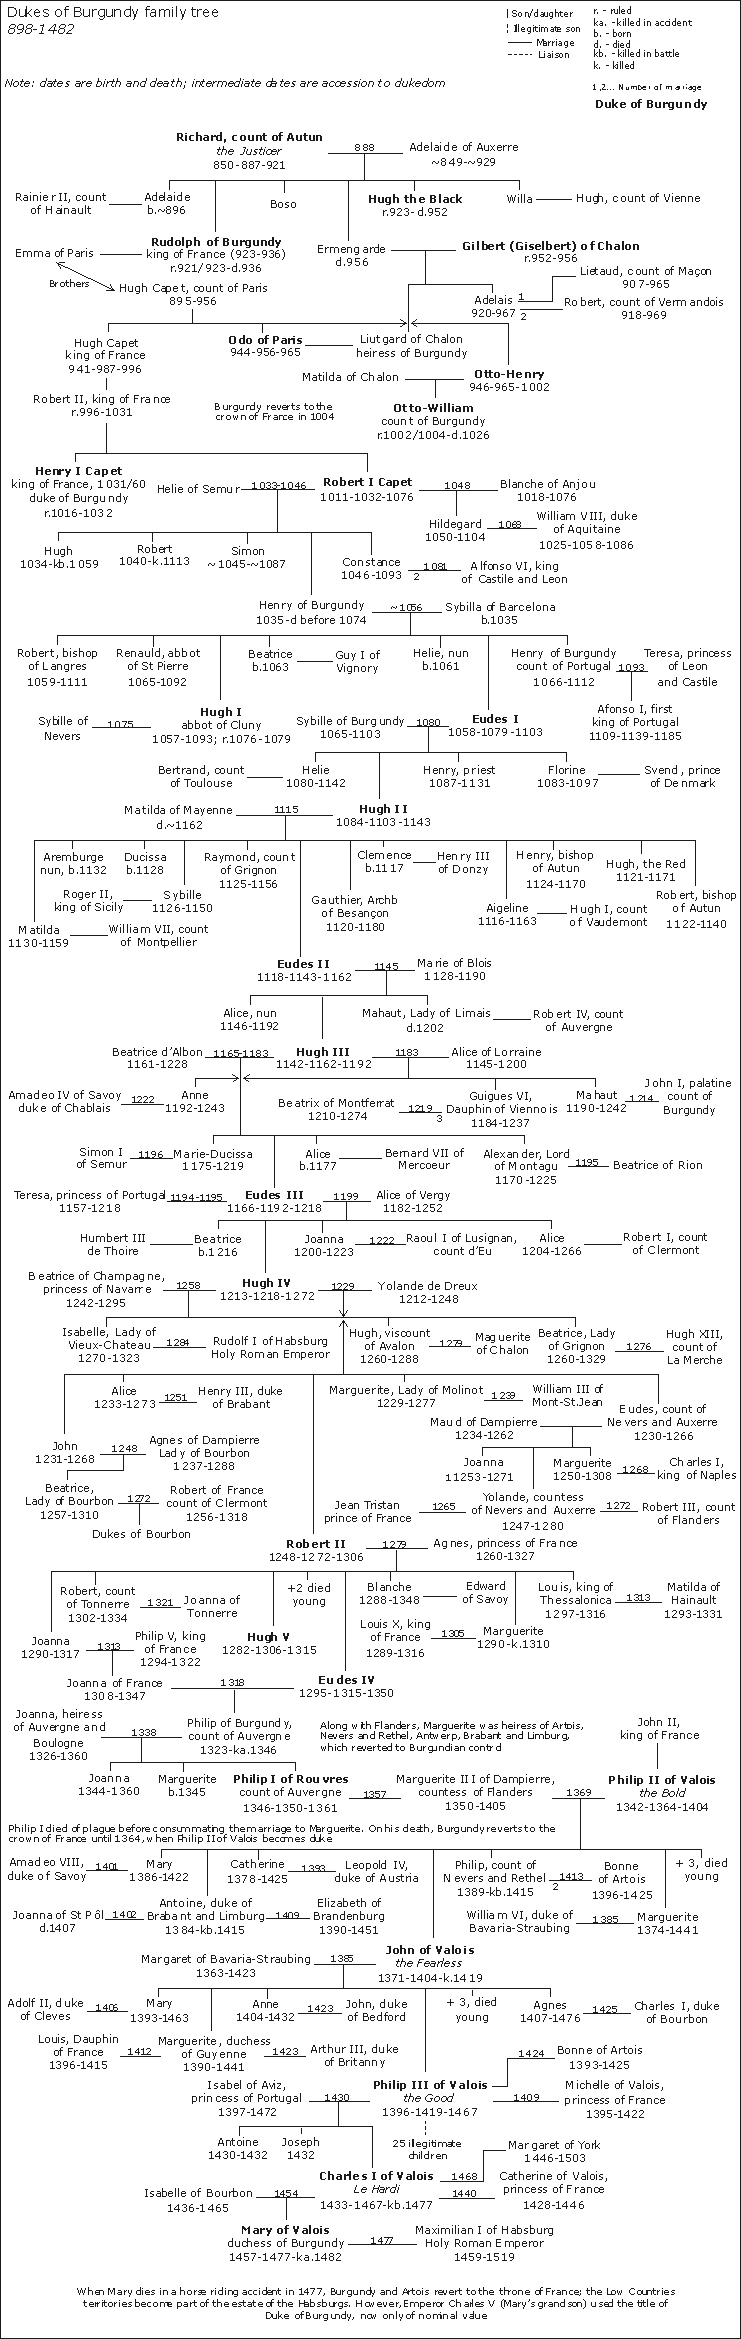 Dukes of Burgundy family tree